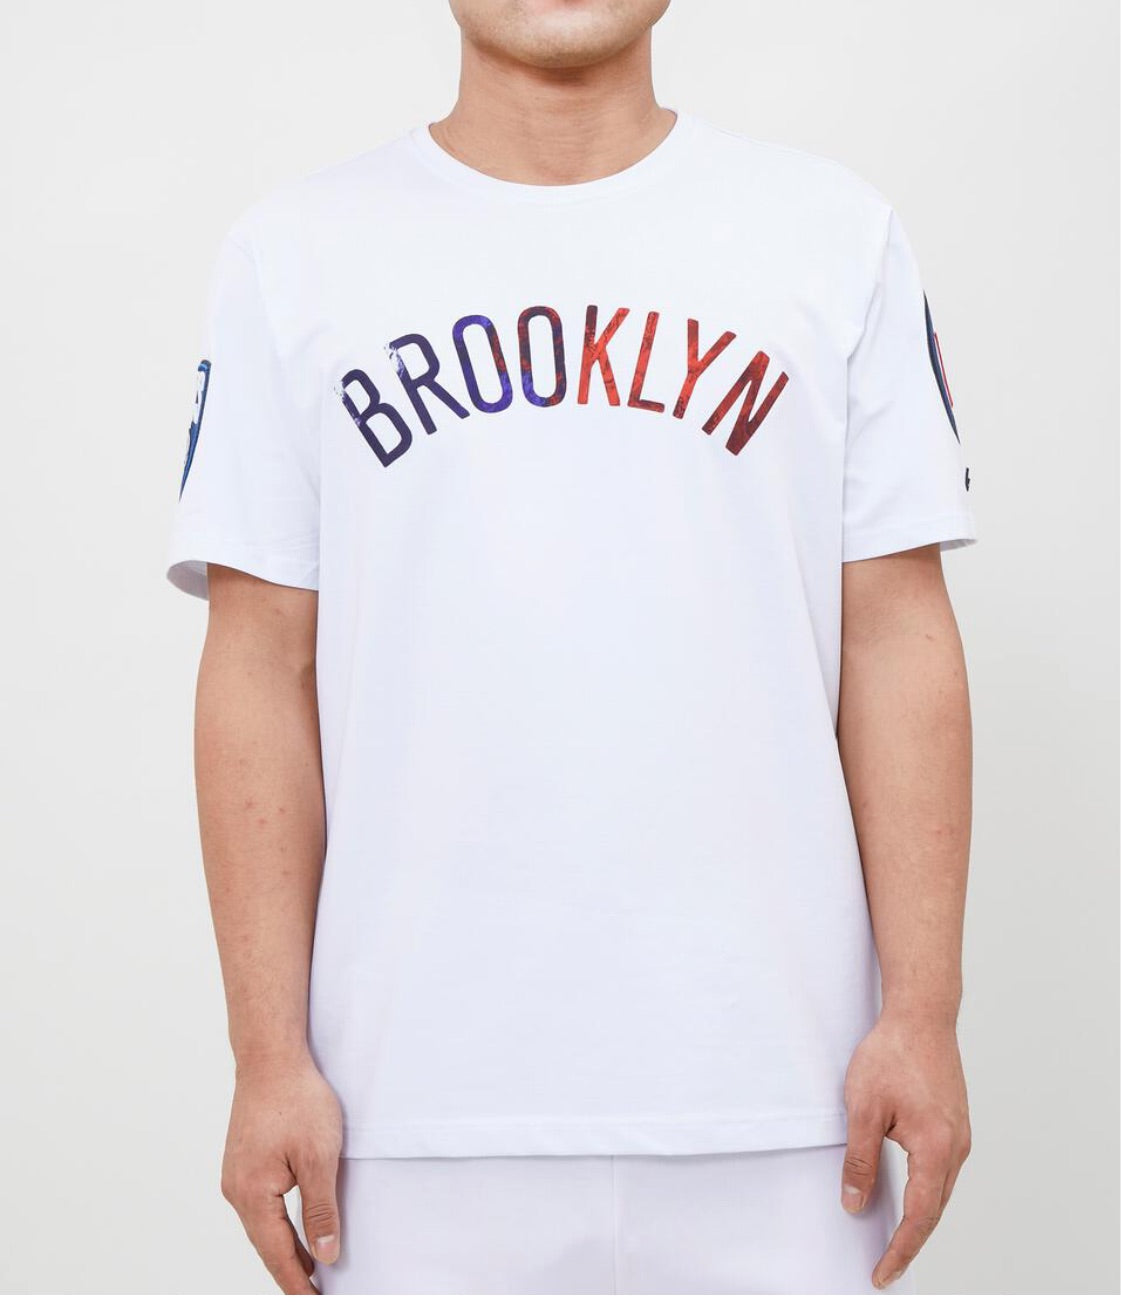 Pro Standard Brooklyn Nets Sports Tee Shirt